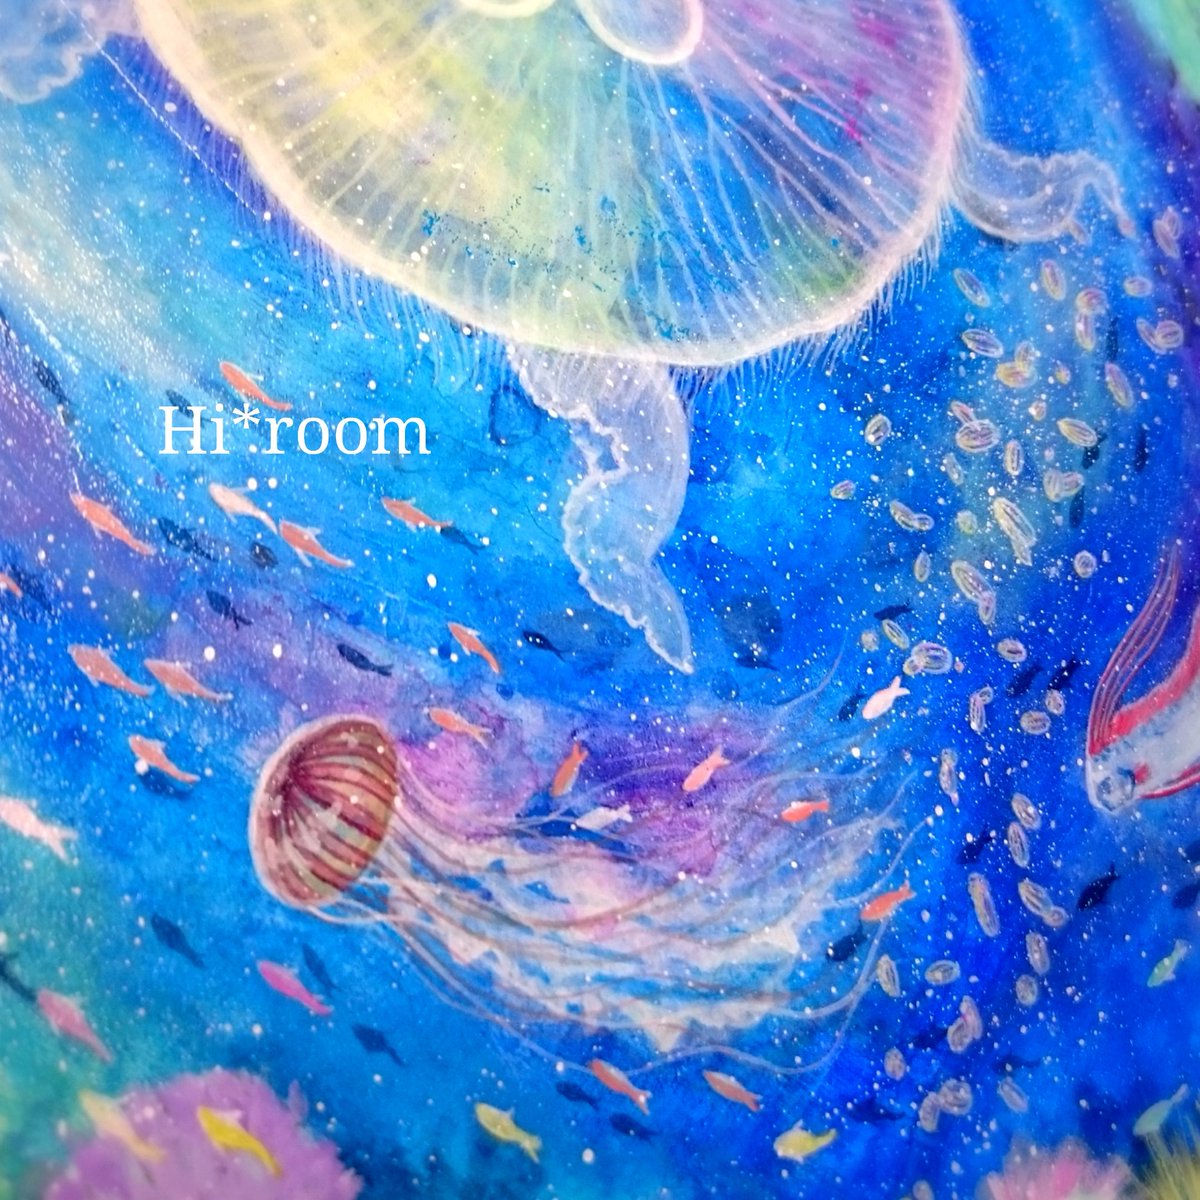 Hi Room 天体観測展21 海月幸論 בטוויטר 新作の絵が完成した パラダイス感満載のカラフルな仕上がりになってます 絵の一部 クラゲだらけの部分 ウリクラゲ アカクラゲ ミズクラゲ 青 Blue アクリル画 クラゲ Jellyfish イラスト Illustration